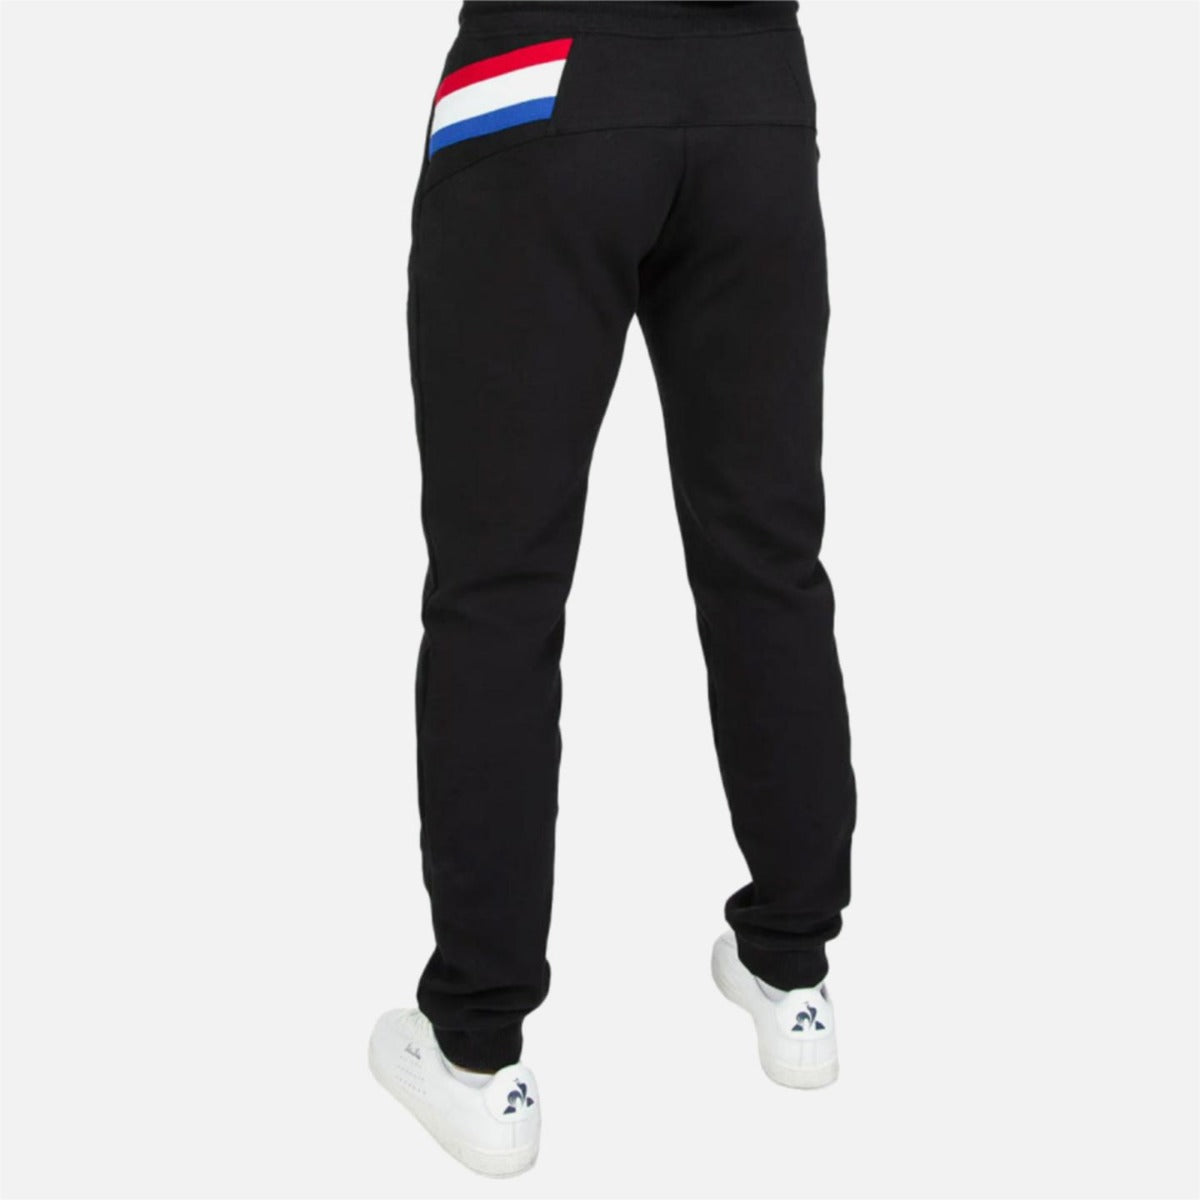 Le Coq Sportif Tricolor Trousers - Black 